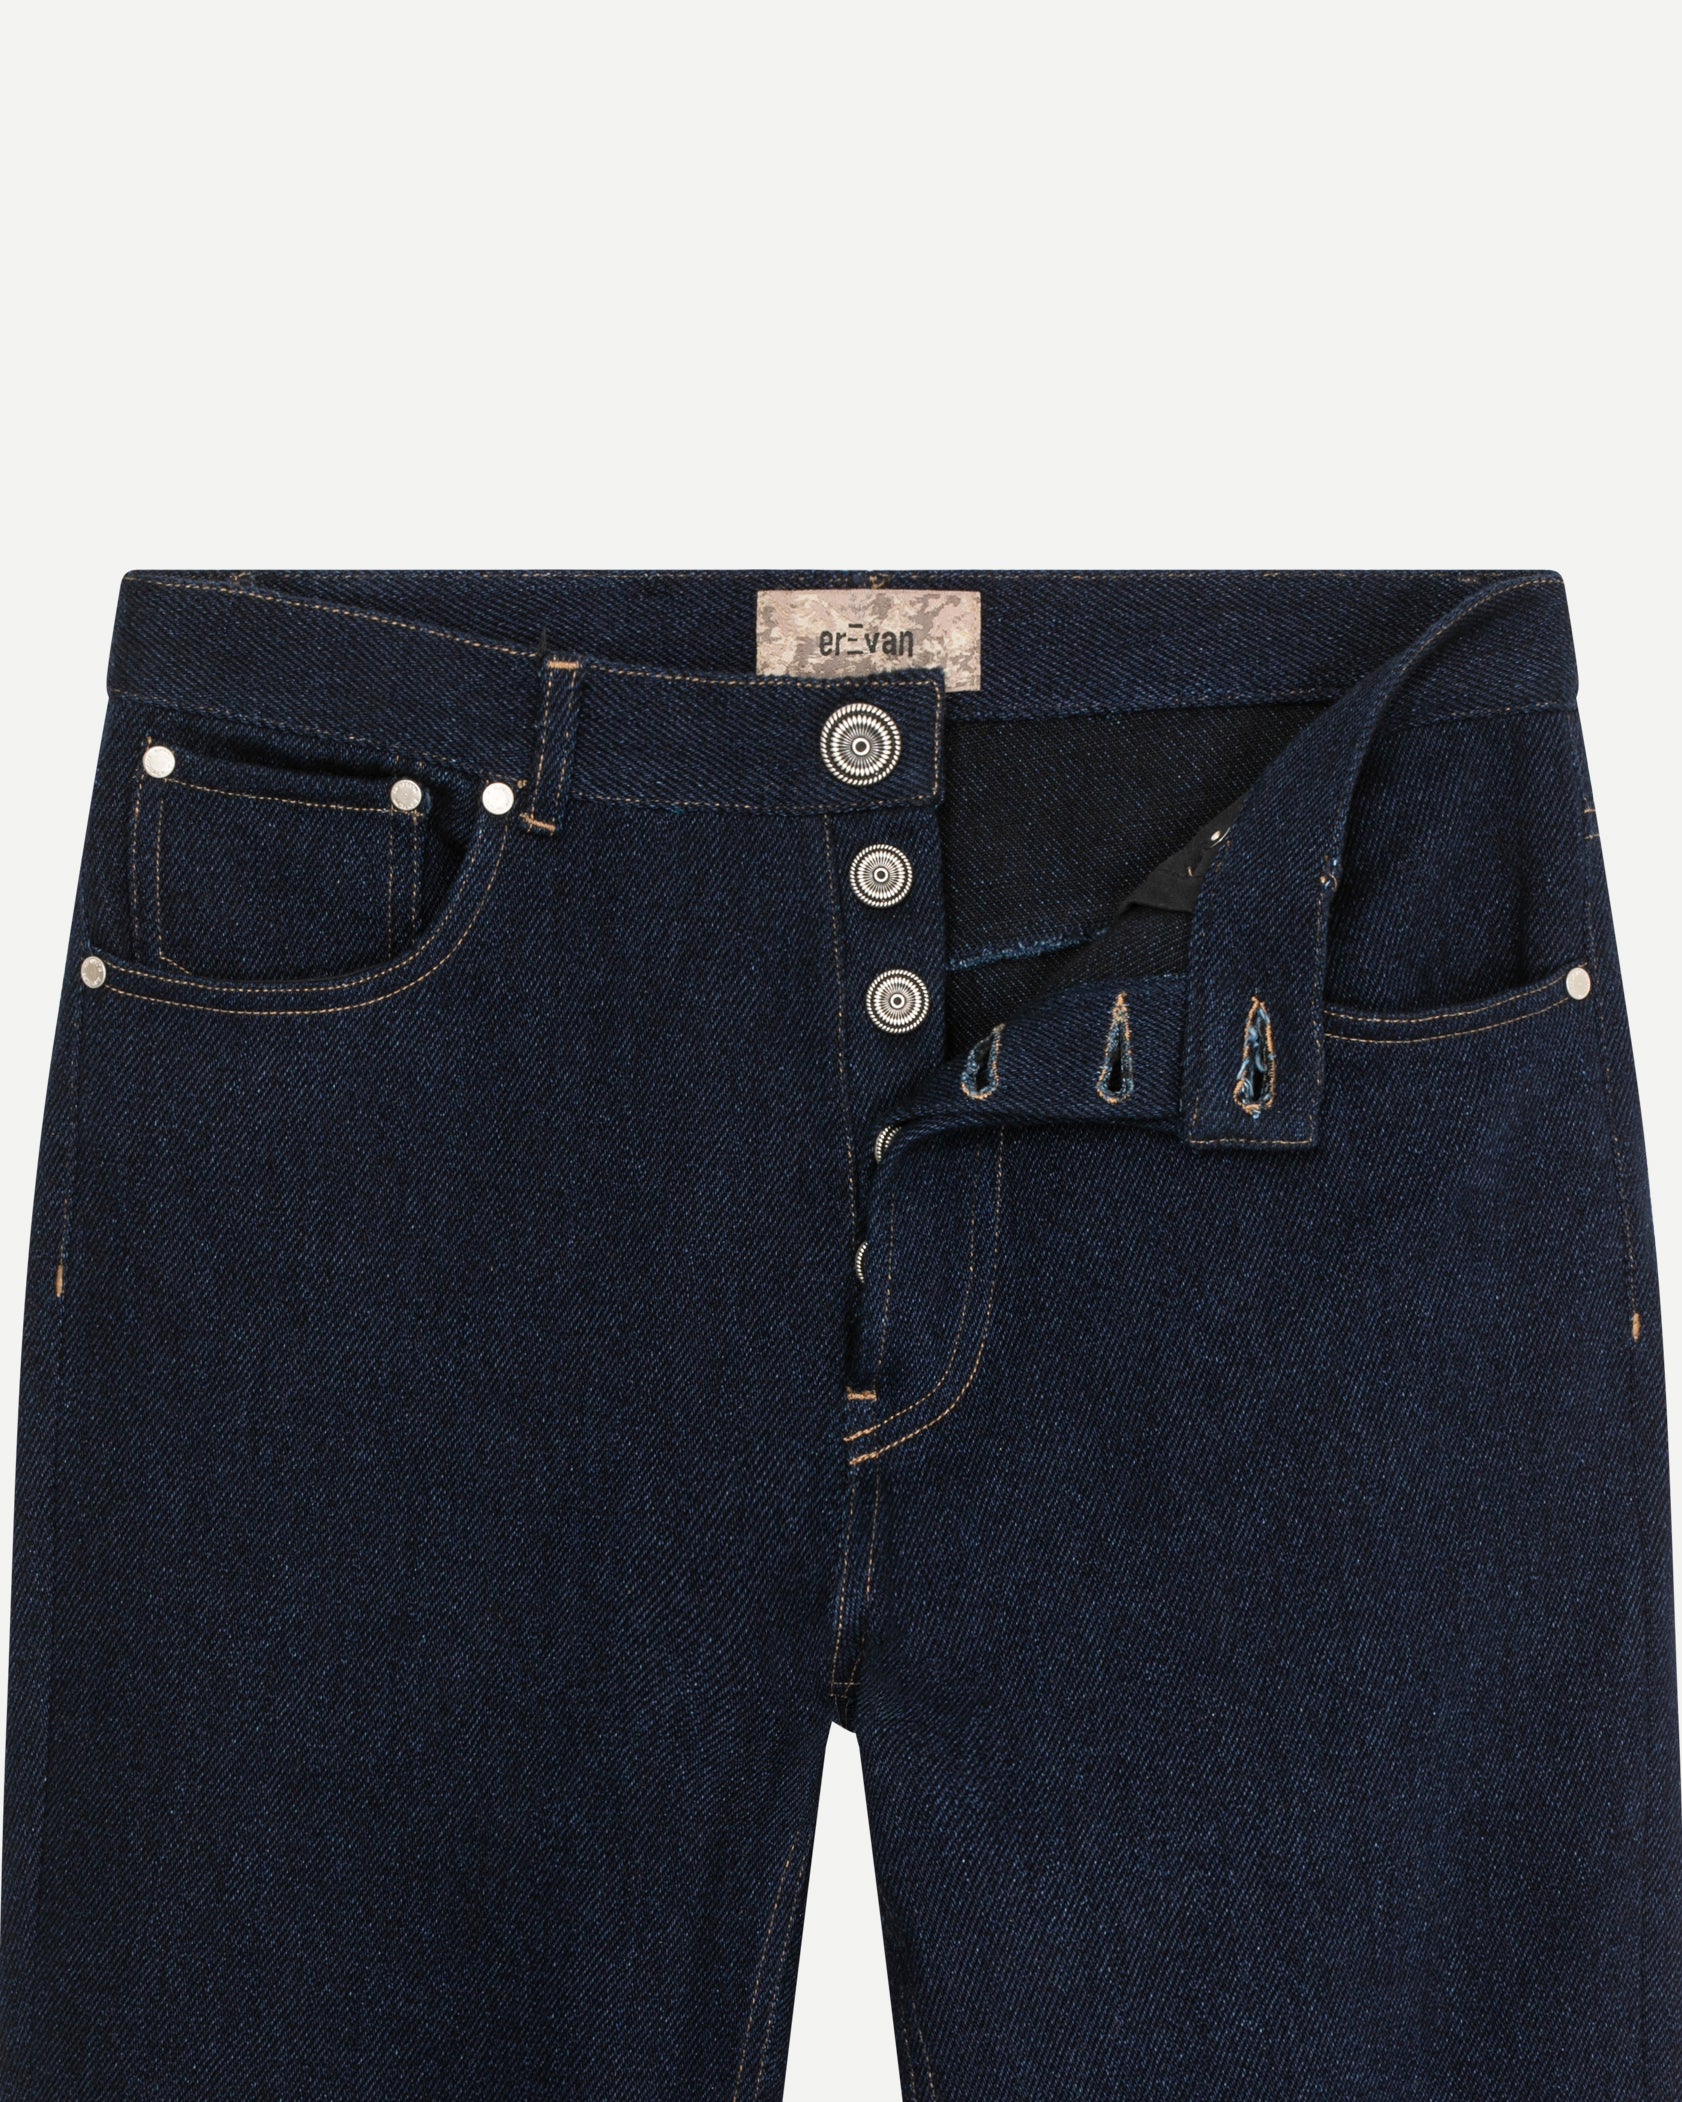 Jeans de luxe pour homme Erevan, taille mi haute, denim japonais, chainstitch hem, fabriqué au portugal